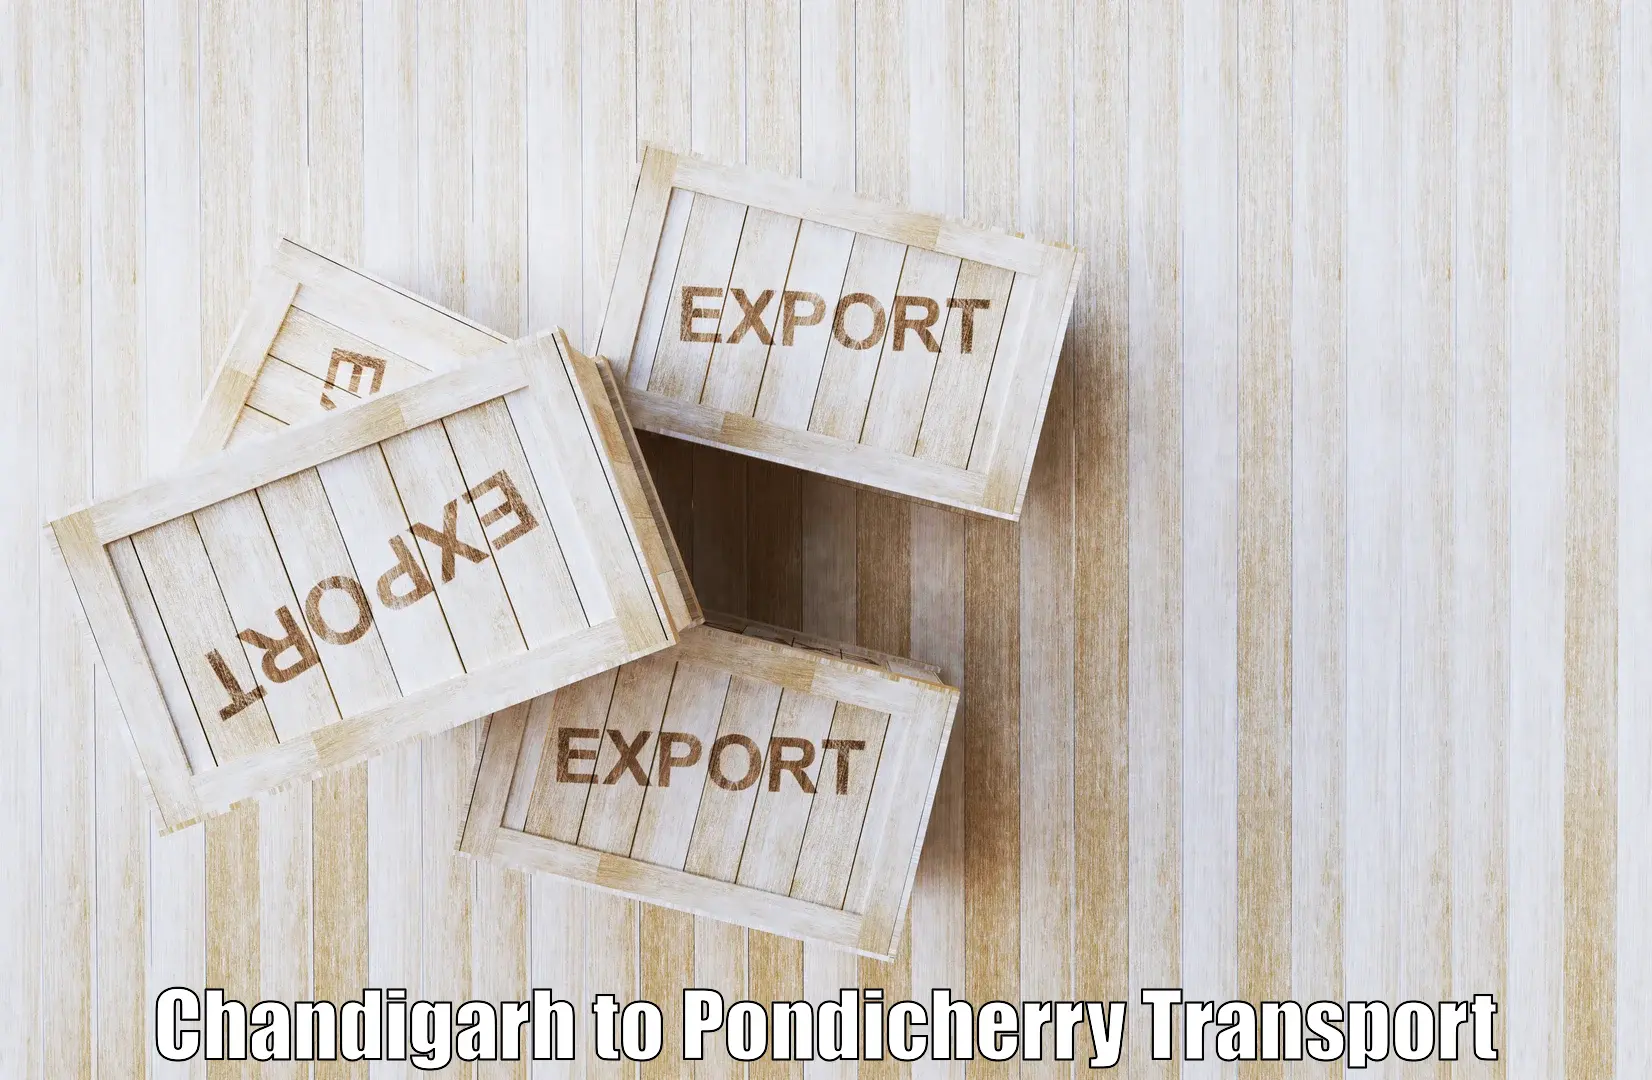 Air freight transport services Chandigarh to Pondicherry